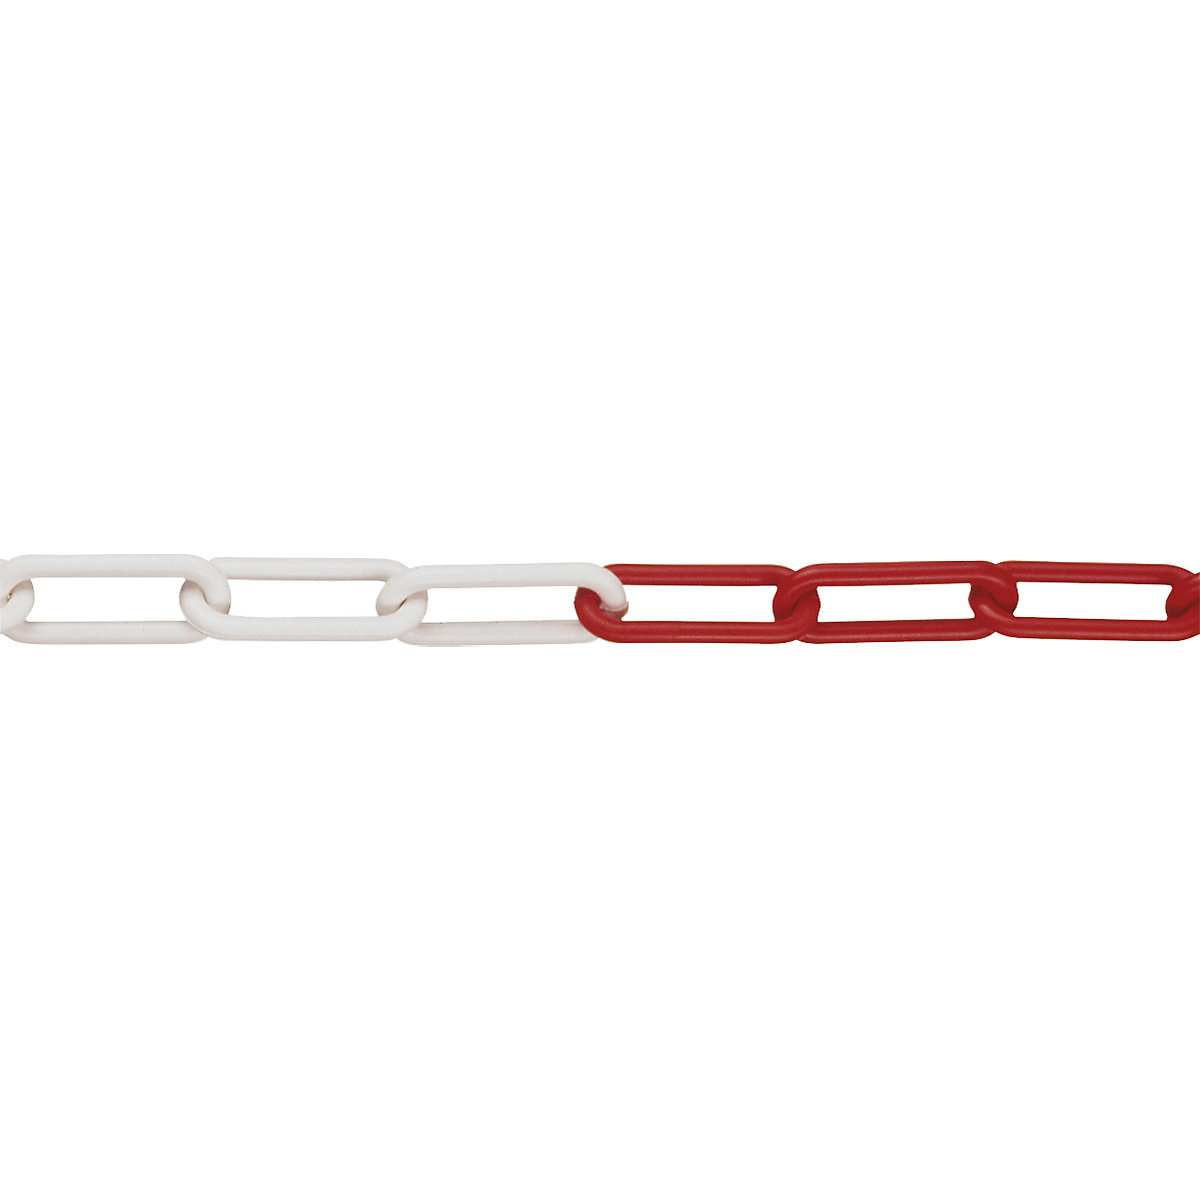 PE szemes lánc, szemvastagság 6 mm, köteghossz 50 m, piros-fehér, 4 darabtól-2